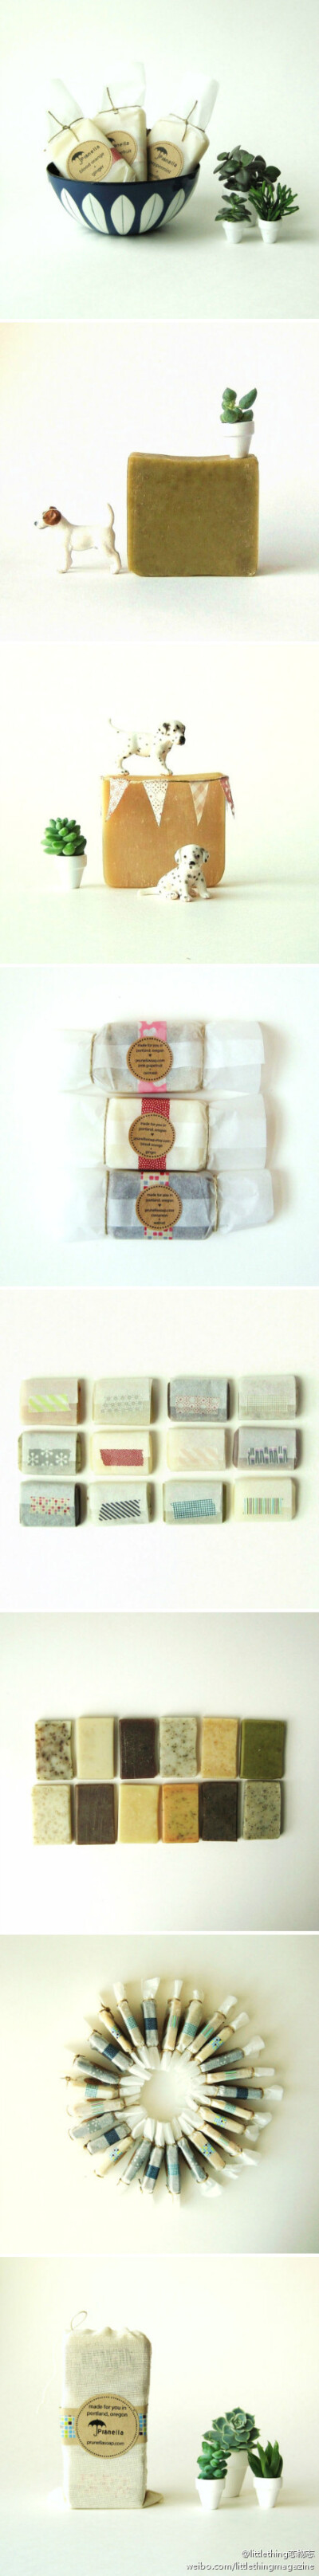 来自美国波特兰的Prunella Soap一直采用传统制皂法制作手工皂,不过更可爱的是Prunella Soap的包装,像糖果一样令人忍不住想咬上一口http://meilishuo.com/u/EAQOkO